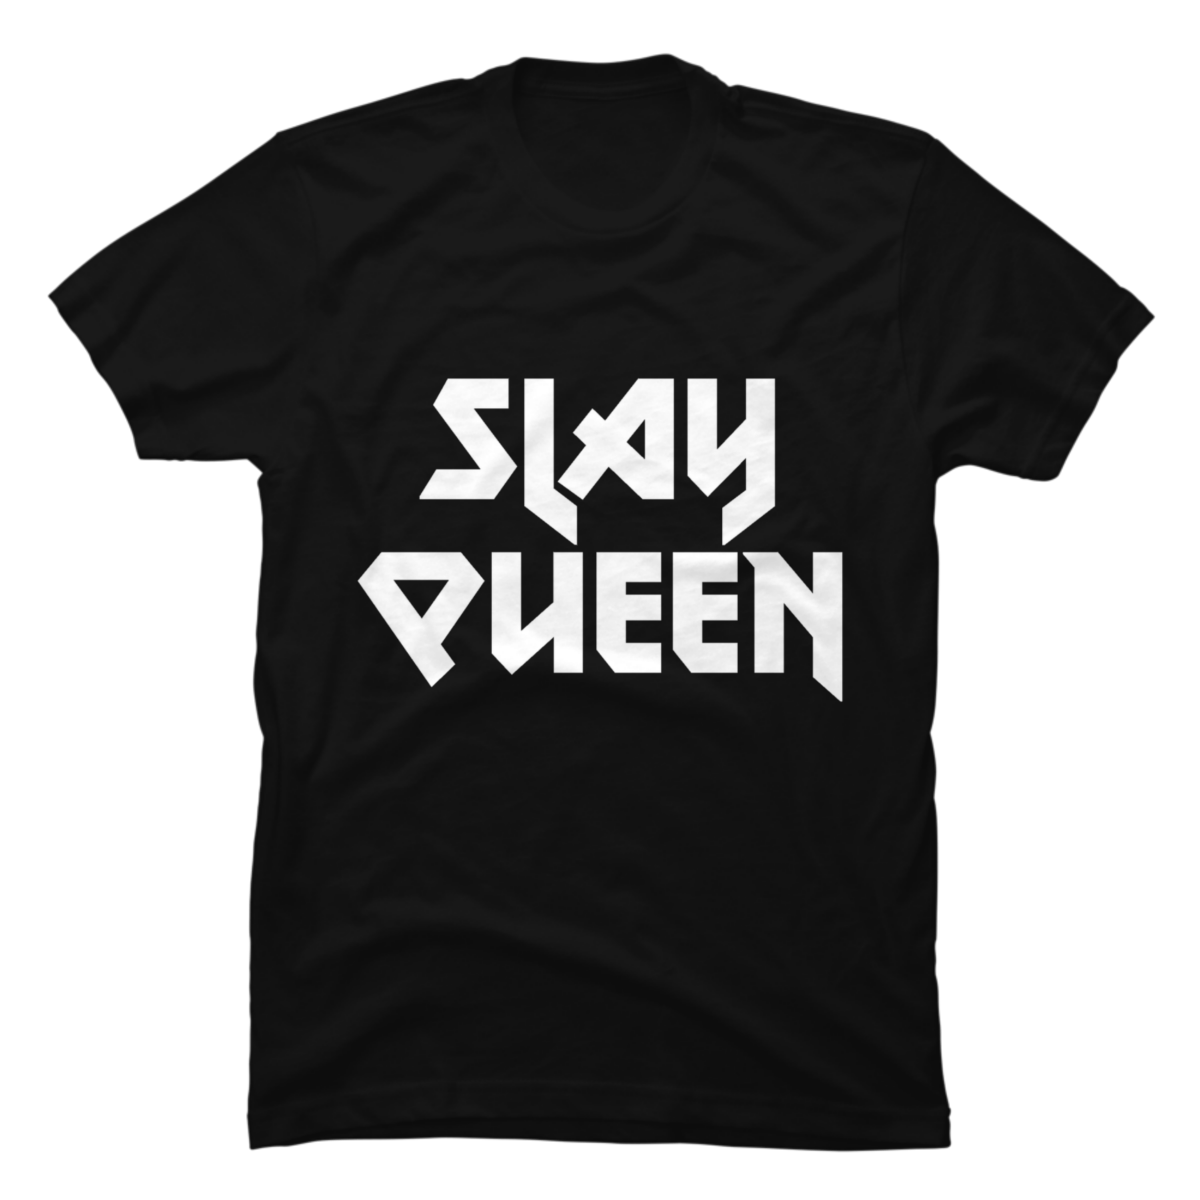 slay queen shirt